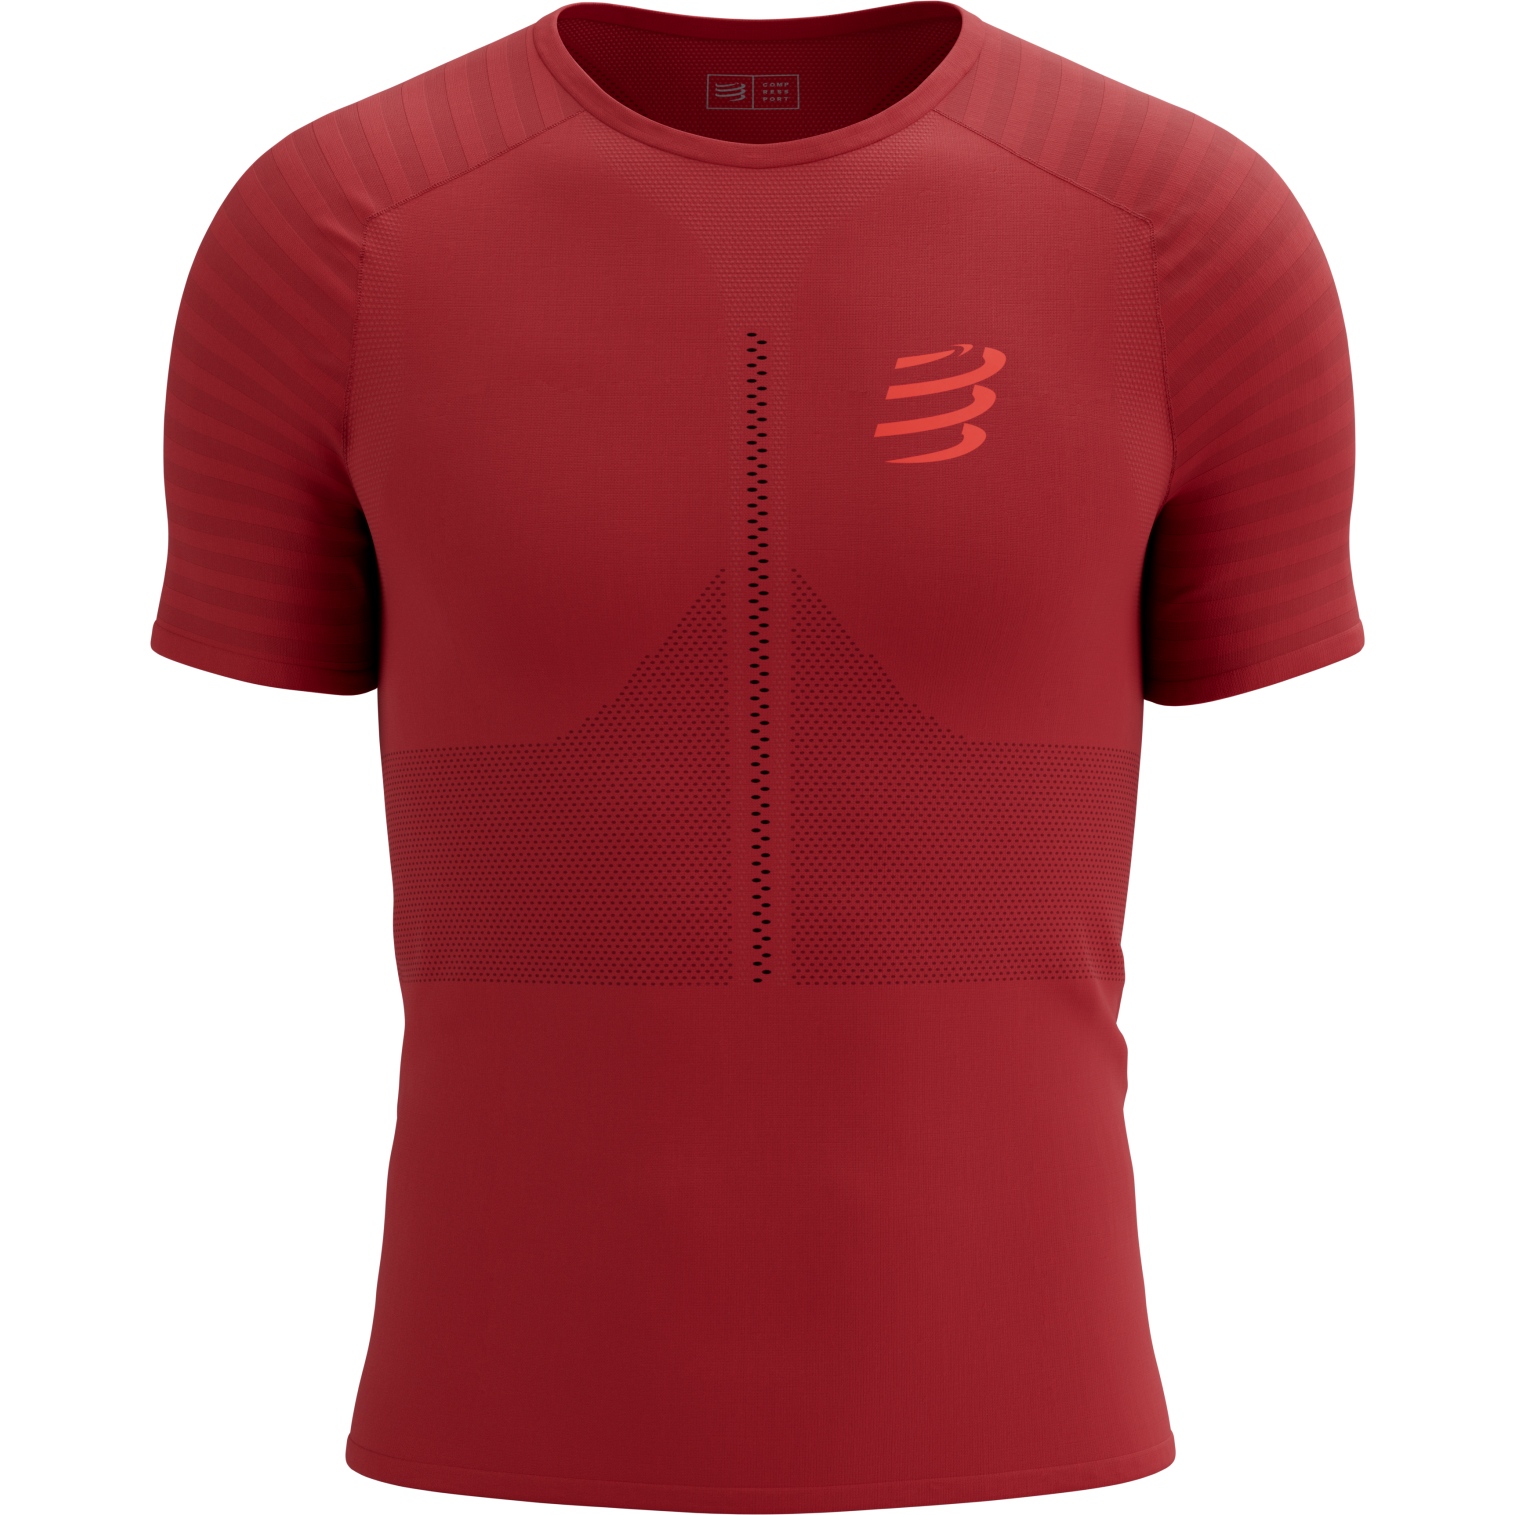 Produktbild von Compressport Racing T-Shirt Herren - samba/red reflective